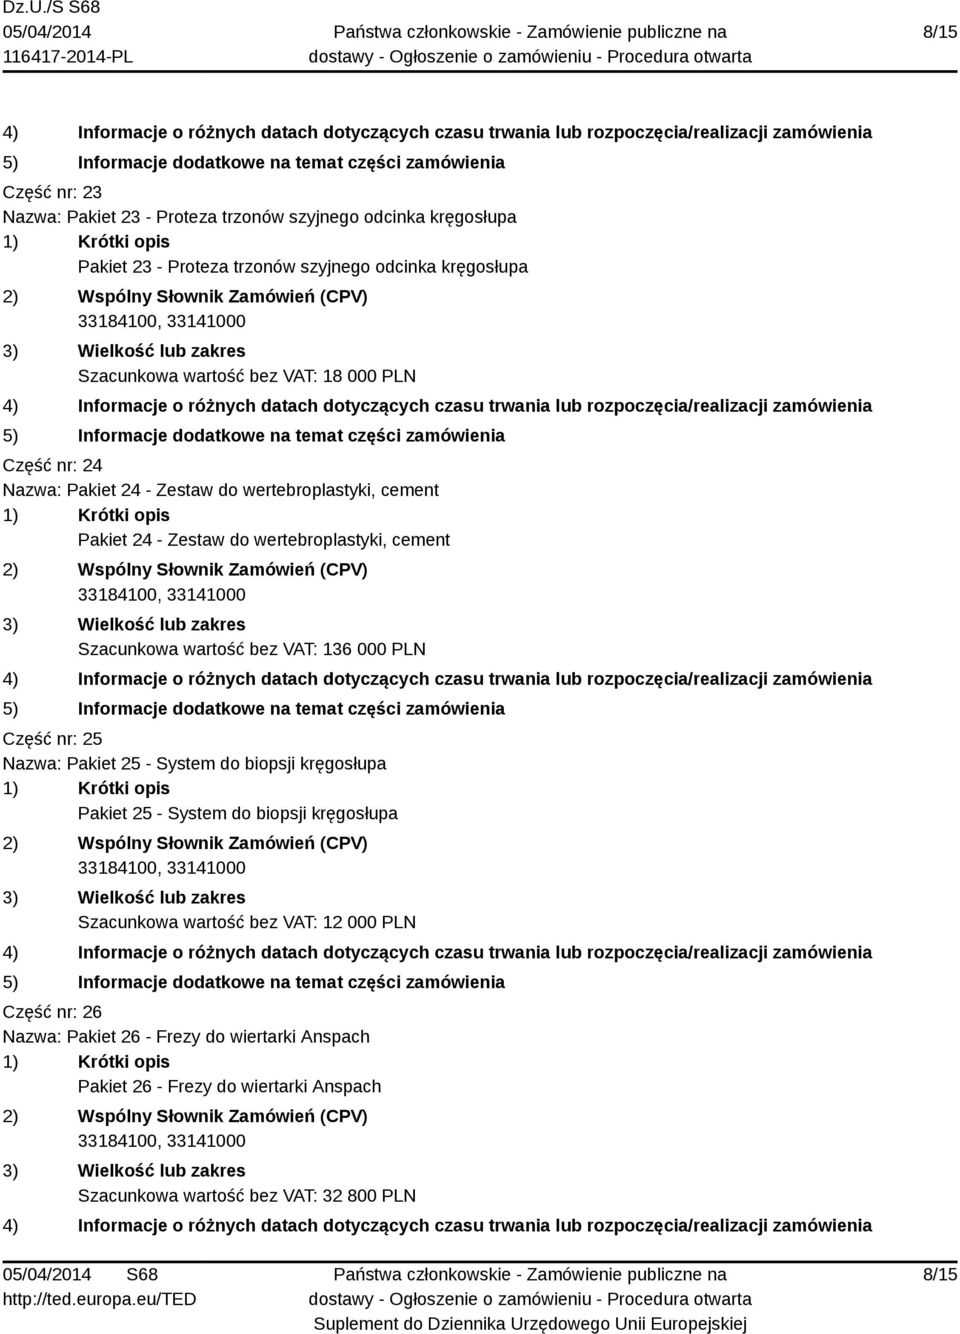 wartość bez VAT: 136 000 PLN Część nr: 25 Nazwa: Pakiet 25 - System do biopsji kręgosłupa Pakiet 25 - System do biopsji kręgosłupa Szacunkowa wartość